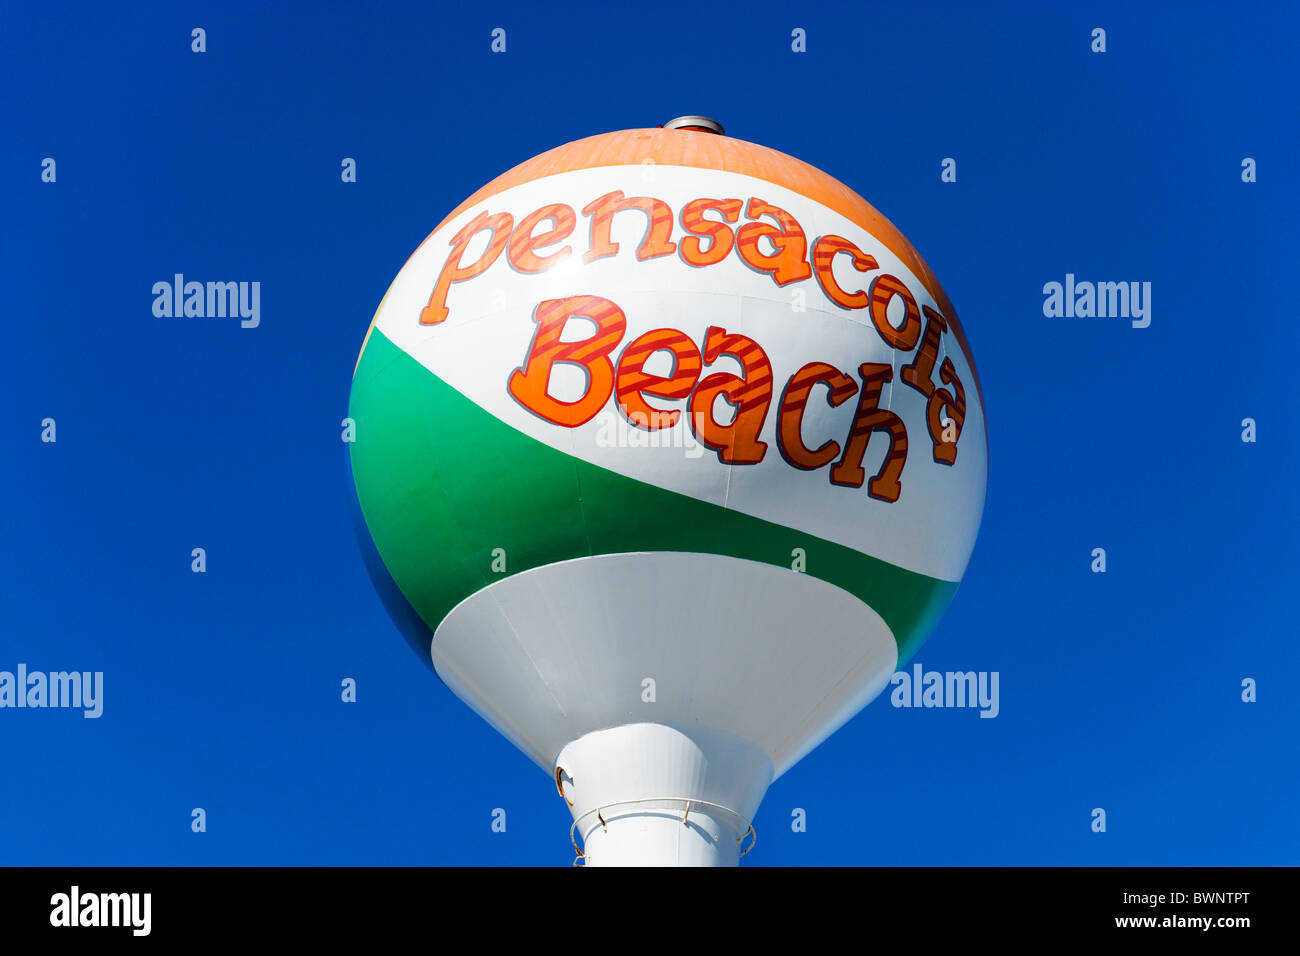 Signo de Pensacola Beach, la Costa del Golfo, Florida, EE.UU. Foto de stock